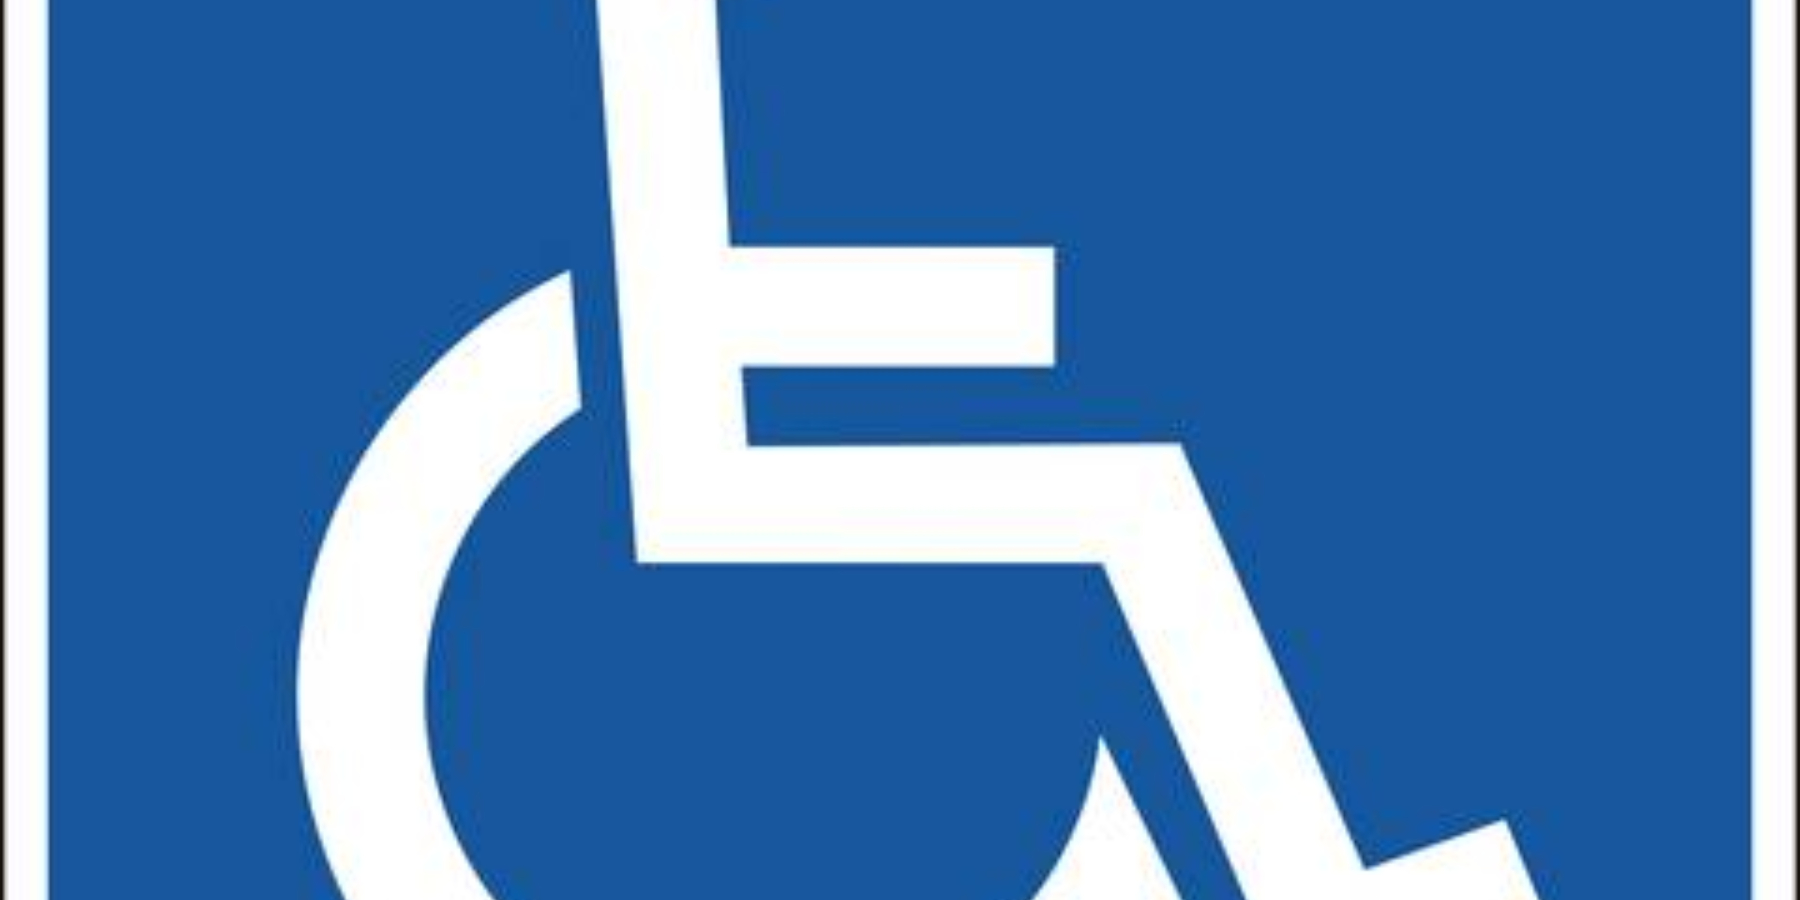 Installazione rampa e sedile per disabili: Immagine Elenchi